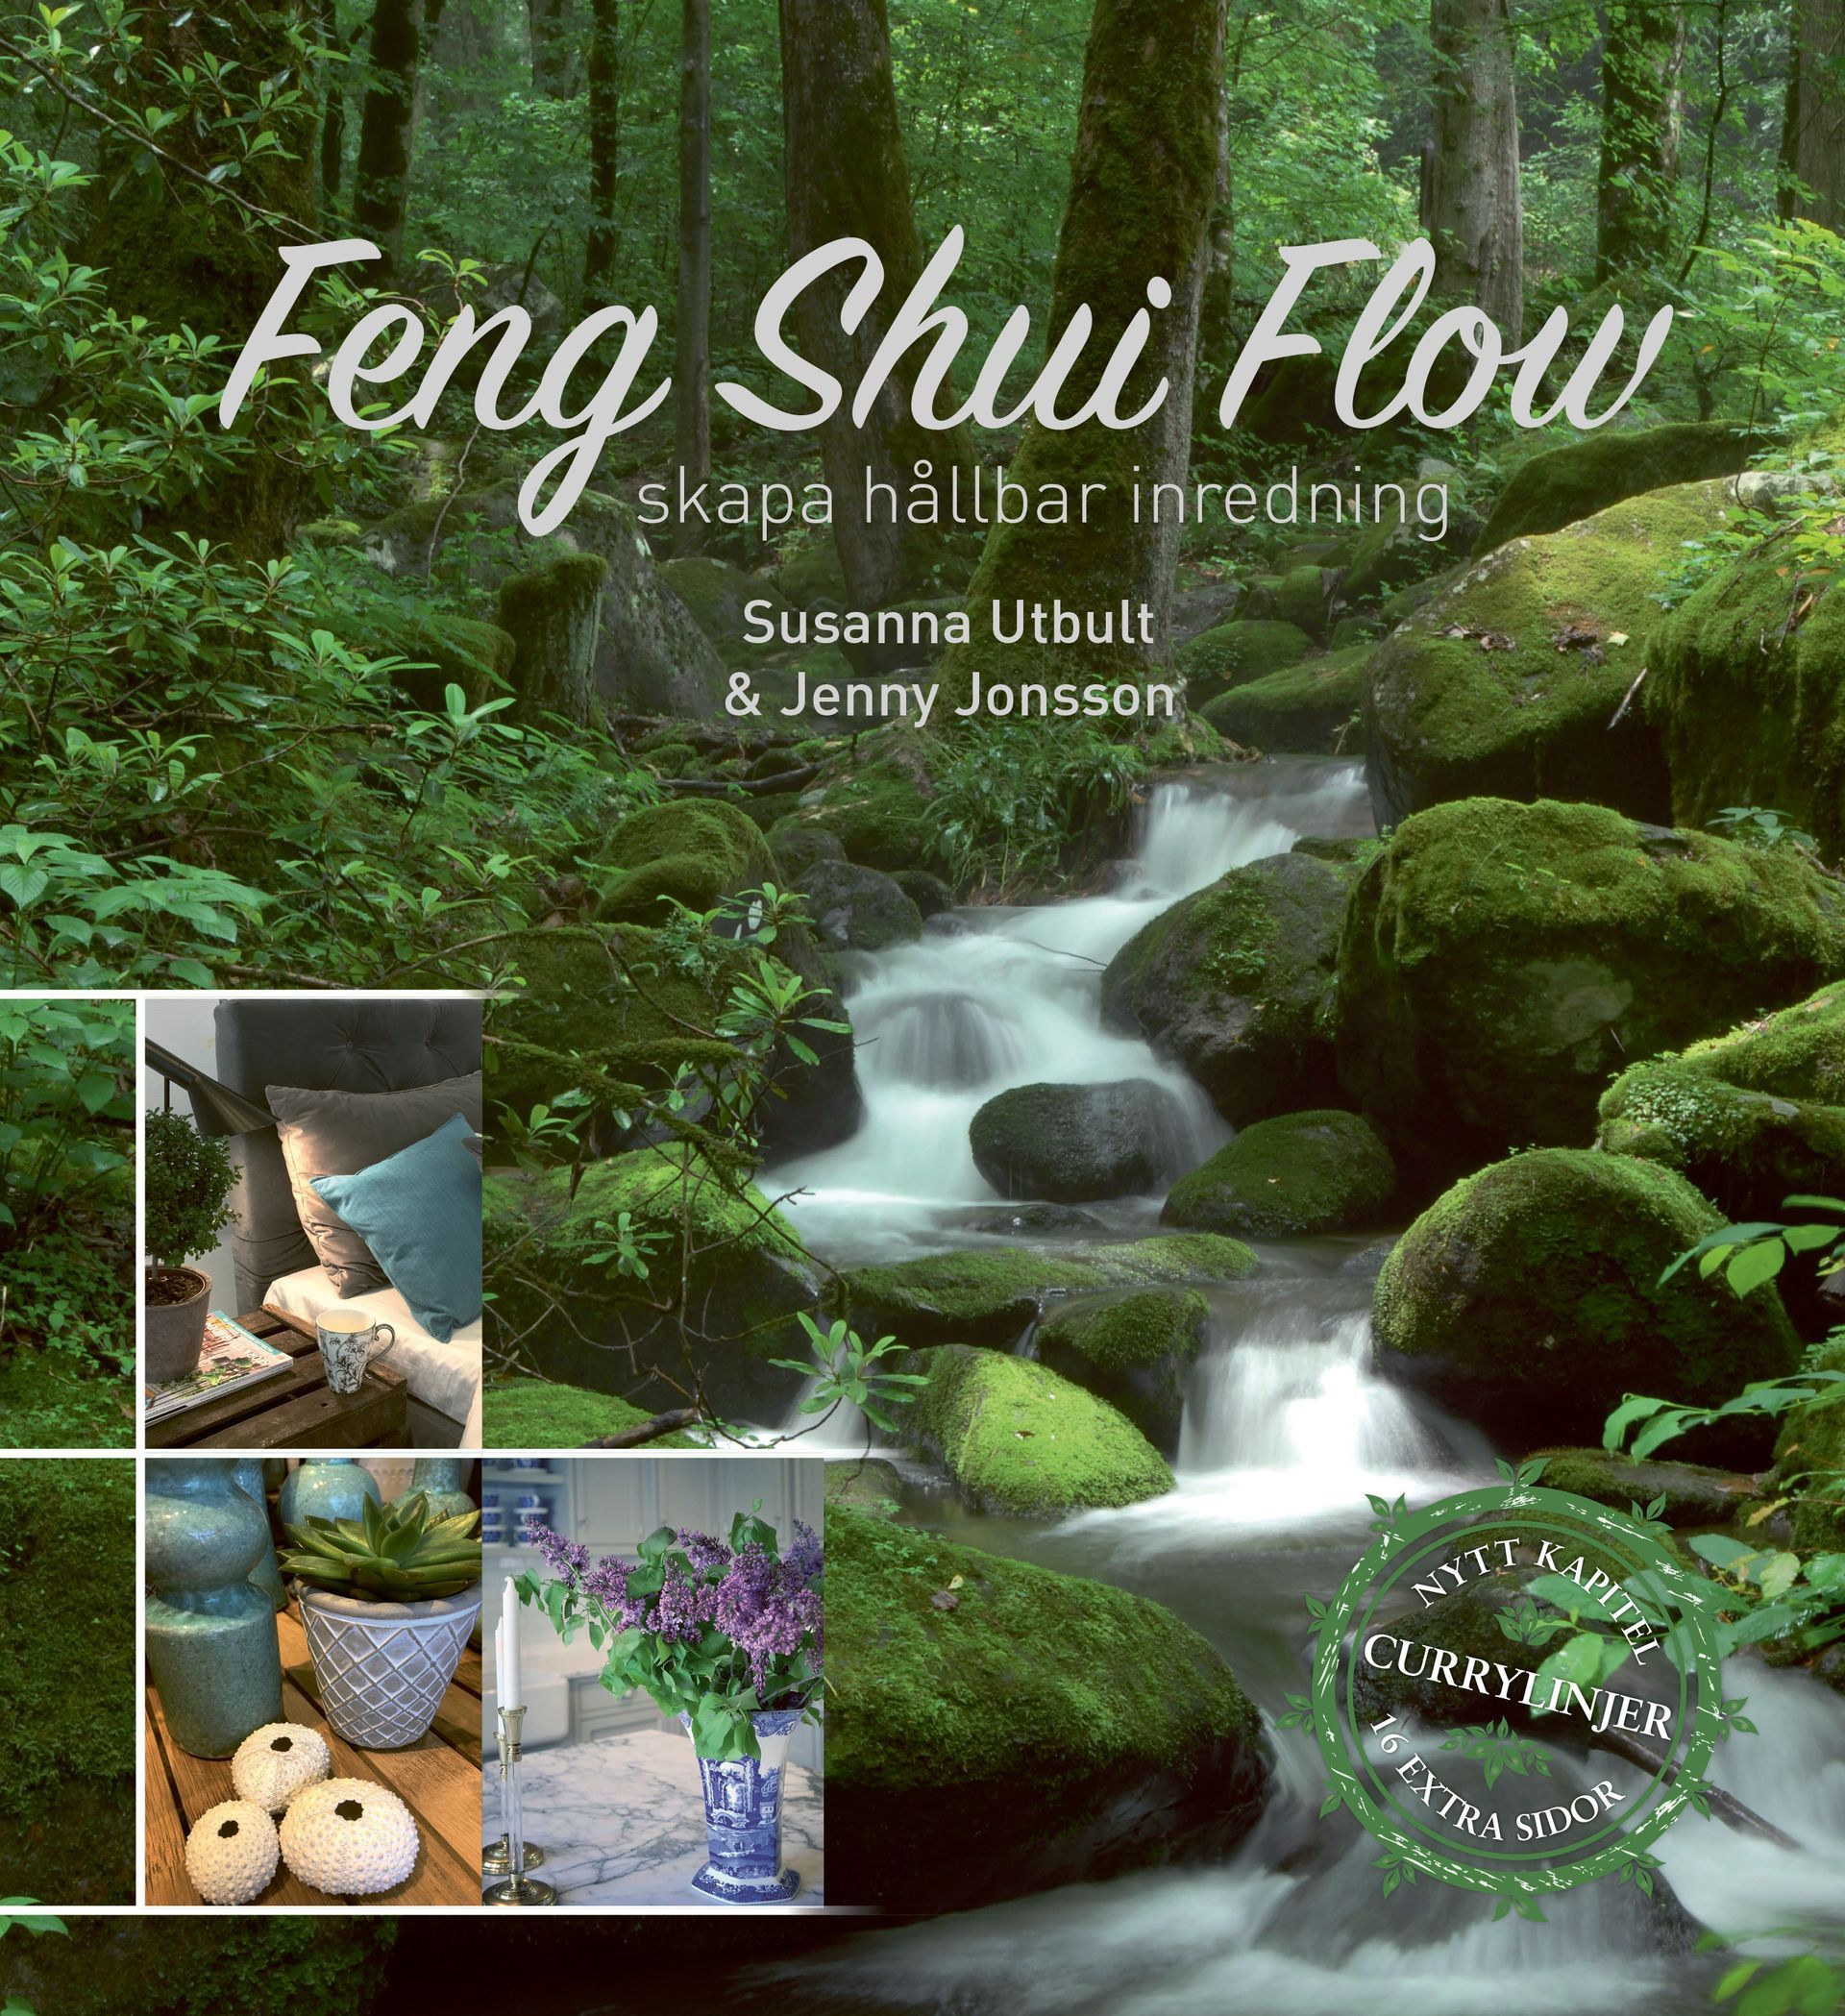 Faktaboken Feng Shui Flow – skapa hållbar inredning, 2023, är skriven av Susanna Utbult och Jenny Jonsson på Stevali Bokförlag.